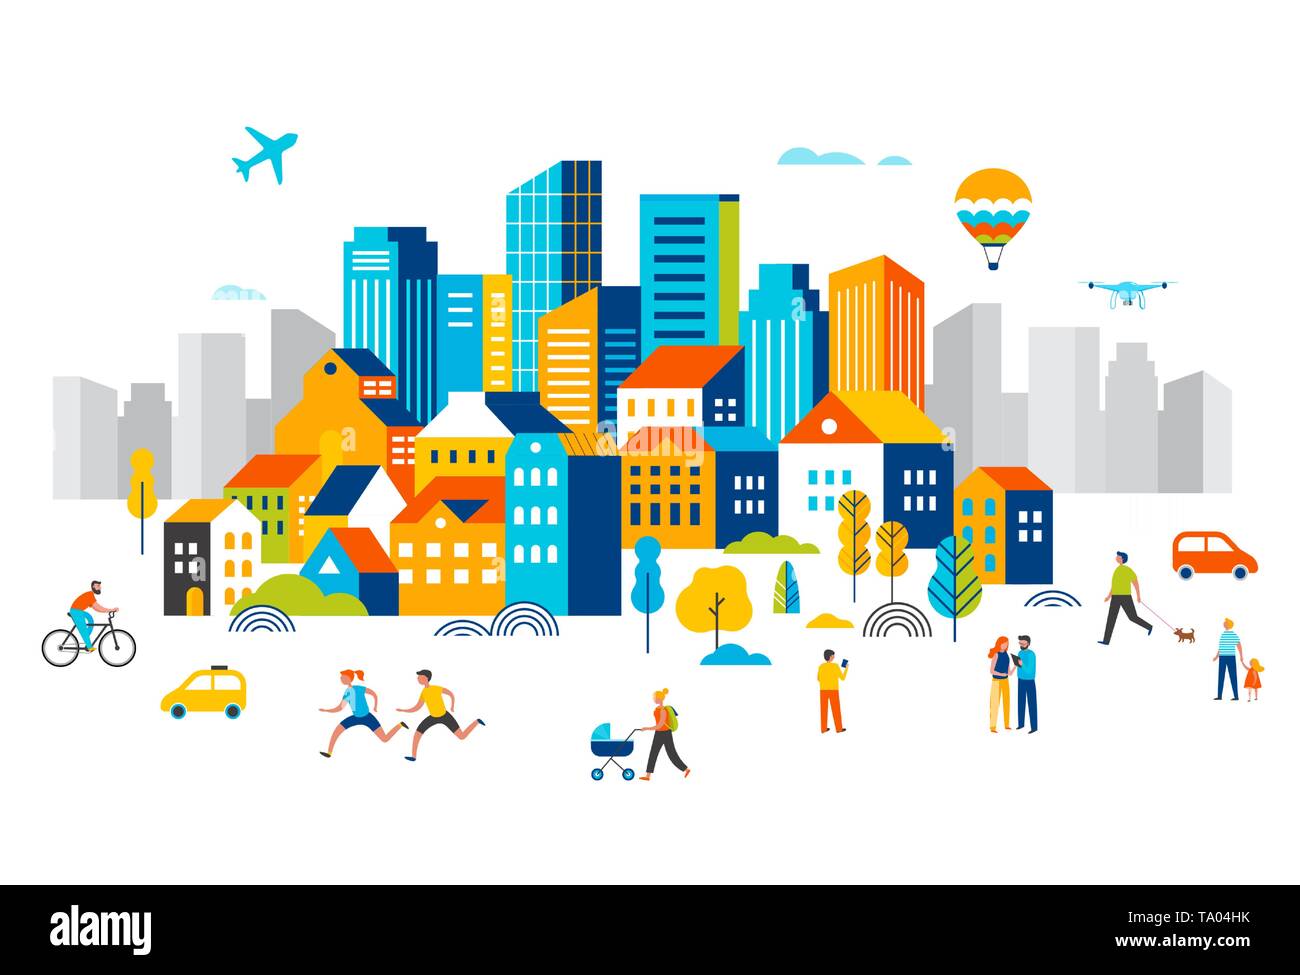 Smart City, centre-ville paysage avec de nombreuses capacités, un avion vole dans le ciel et les gens marcher, courir dans le parc. Illustration de Vecteur